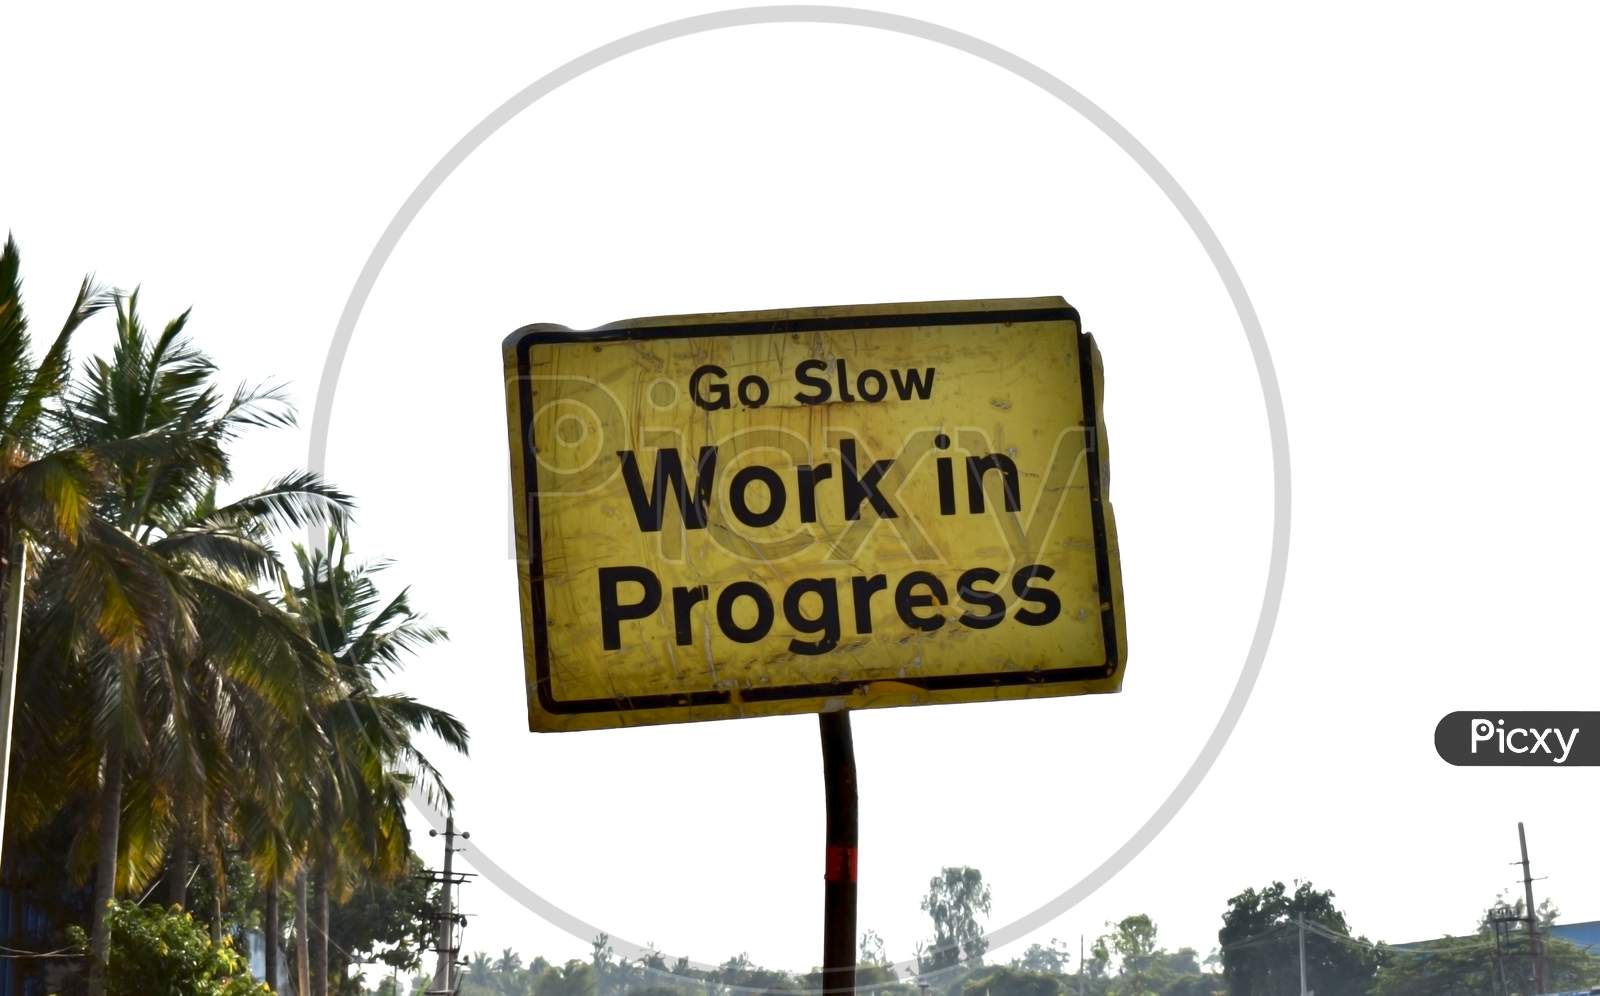 Go slow work in progress sign board